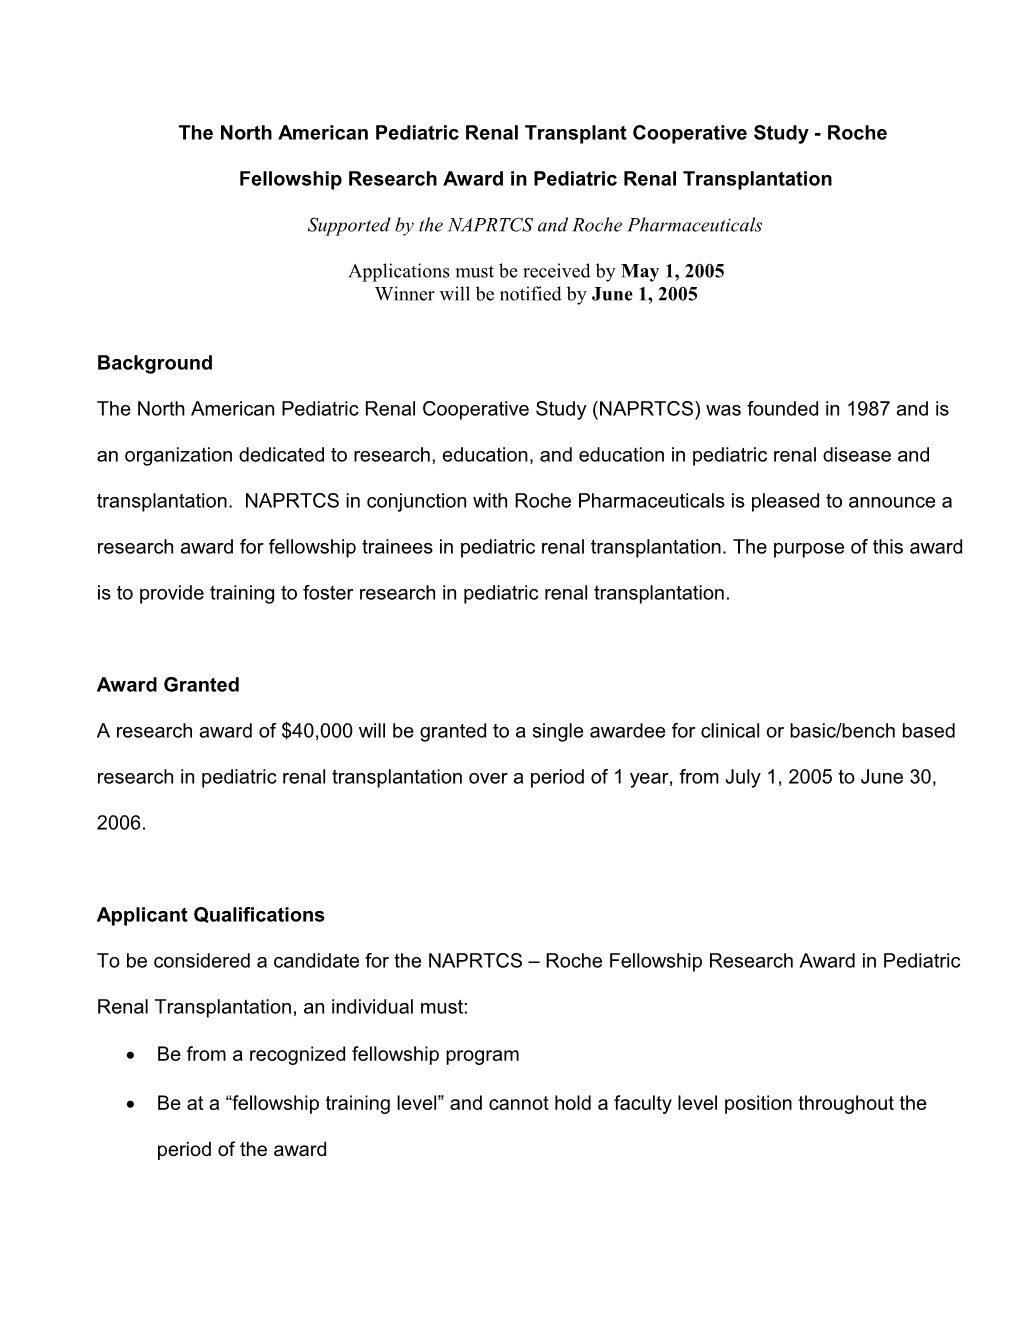 The North American Pediatric Renal Transplant Cooperative Study - Roche